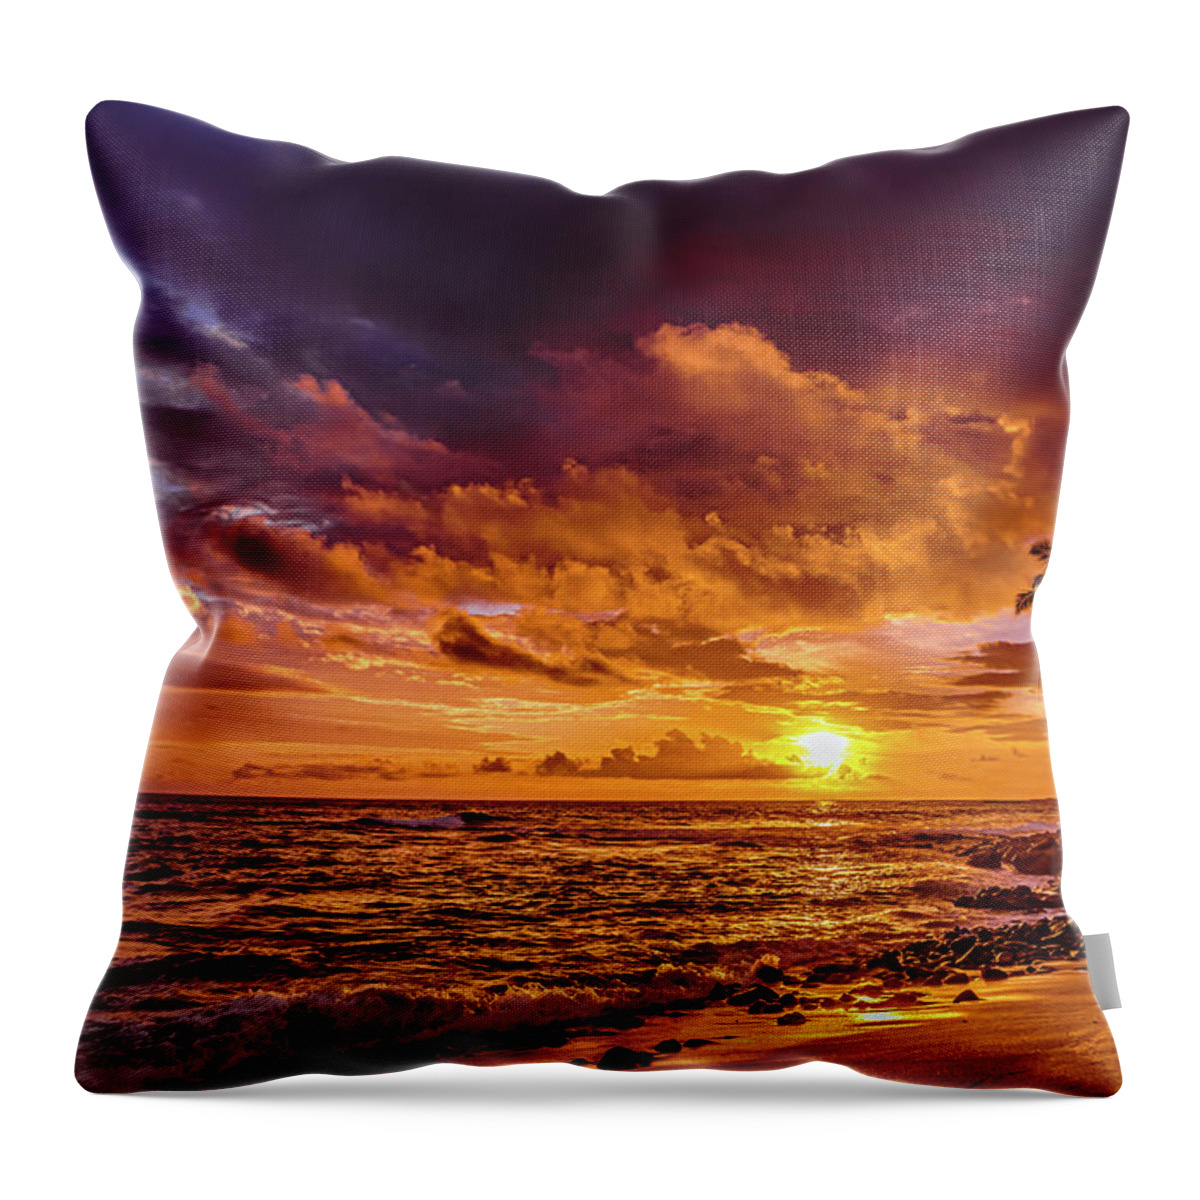 Hawaii Throw Pillow featuring the photograph Honl Beach #1 by John Bauer